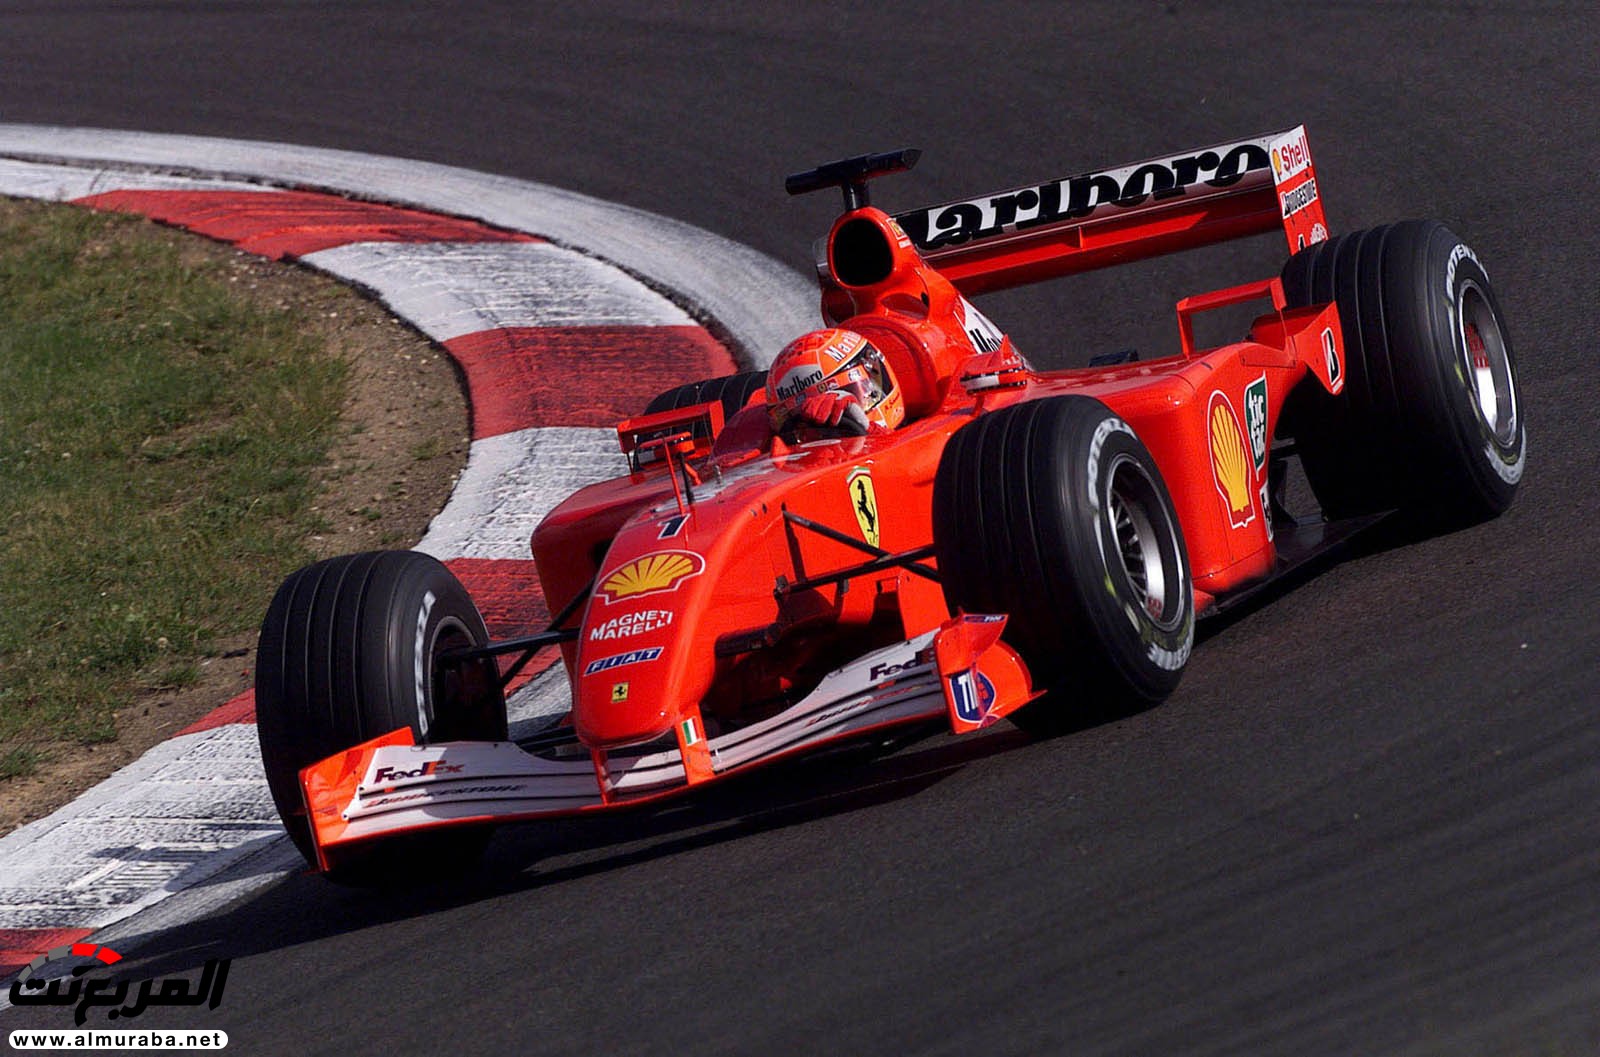 أسطورة فورمولا 1 مايكل شوماخر تباع فيراري F2001 خاصته مقابل 28 مليون ريال 16